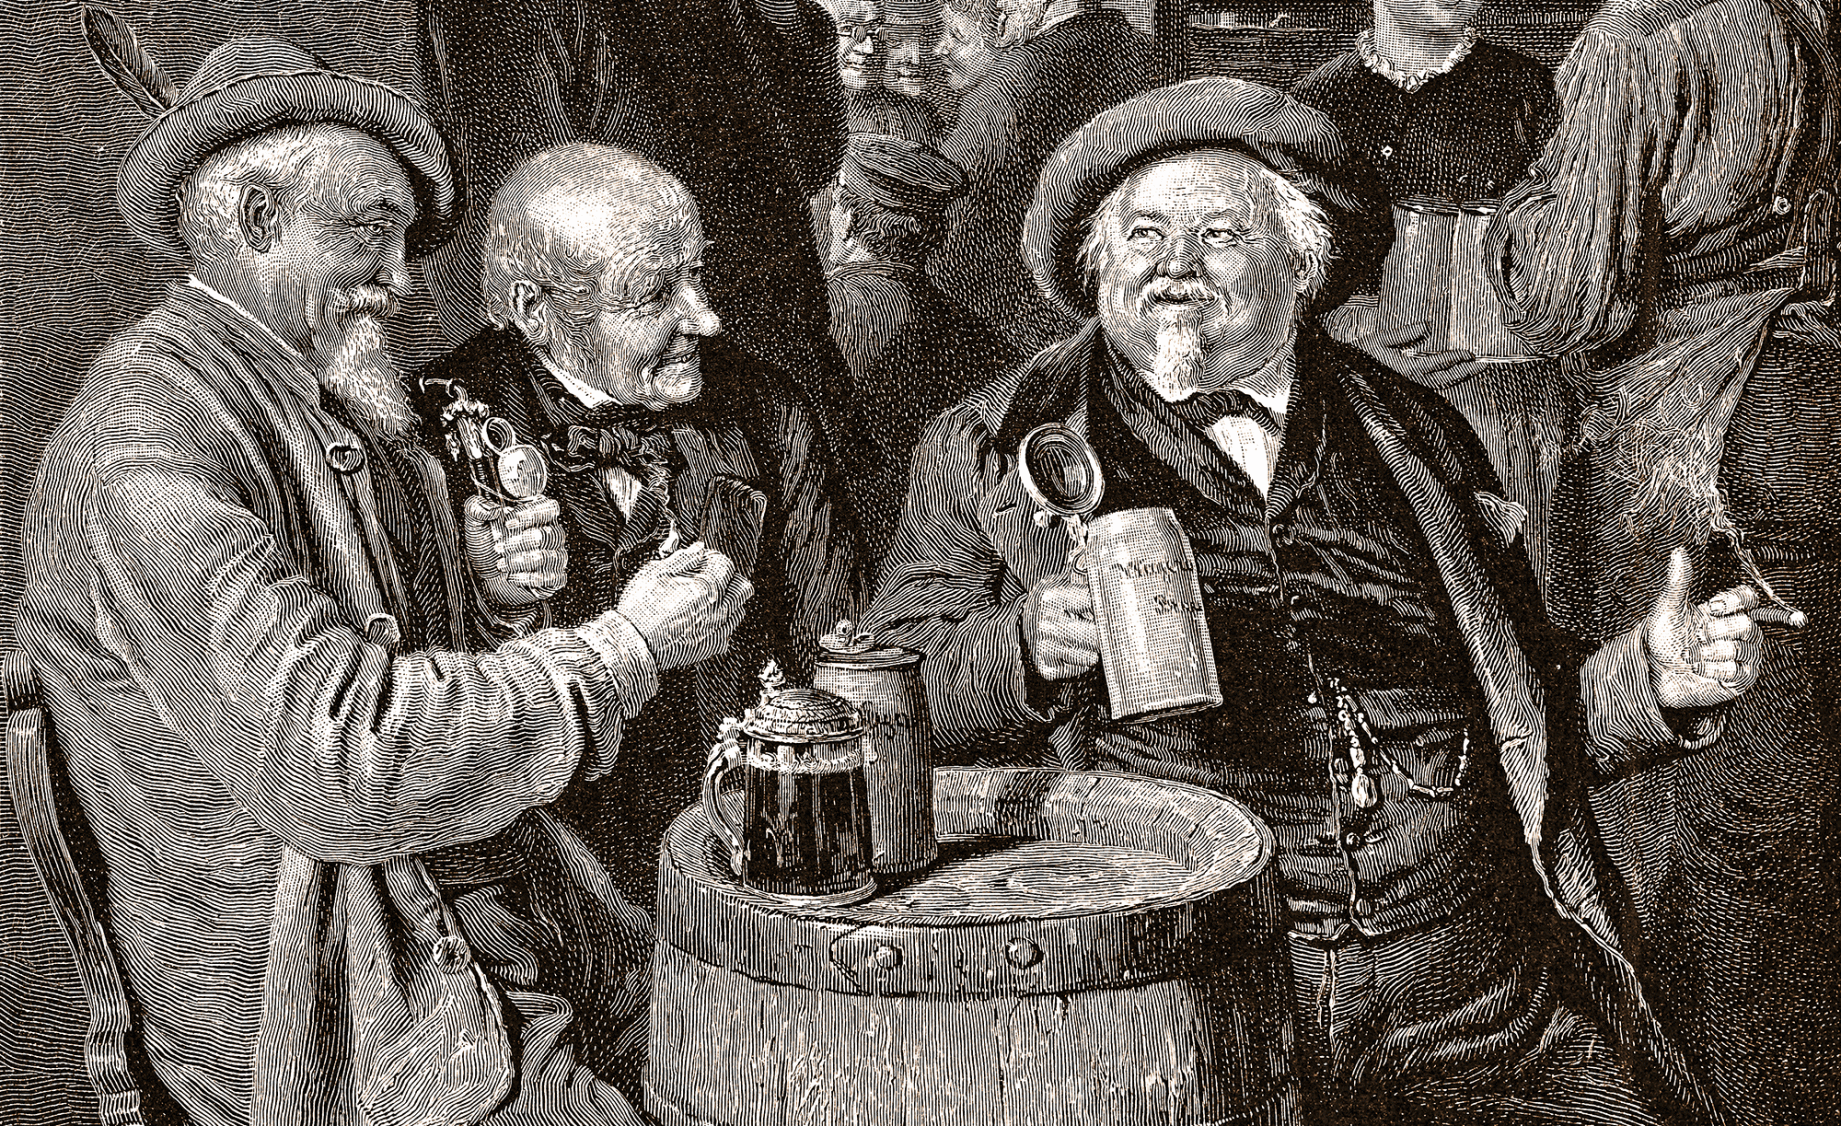 Imagem em preto e branco de tres homens bebendo cerveja. A imagem é antiga